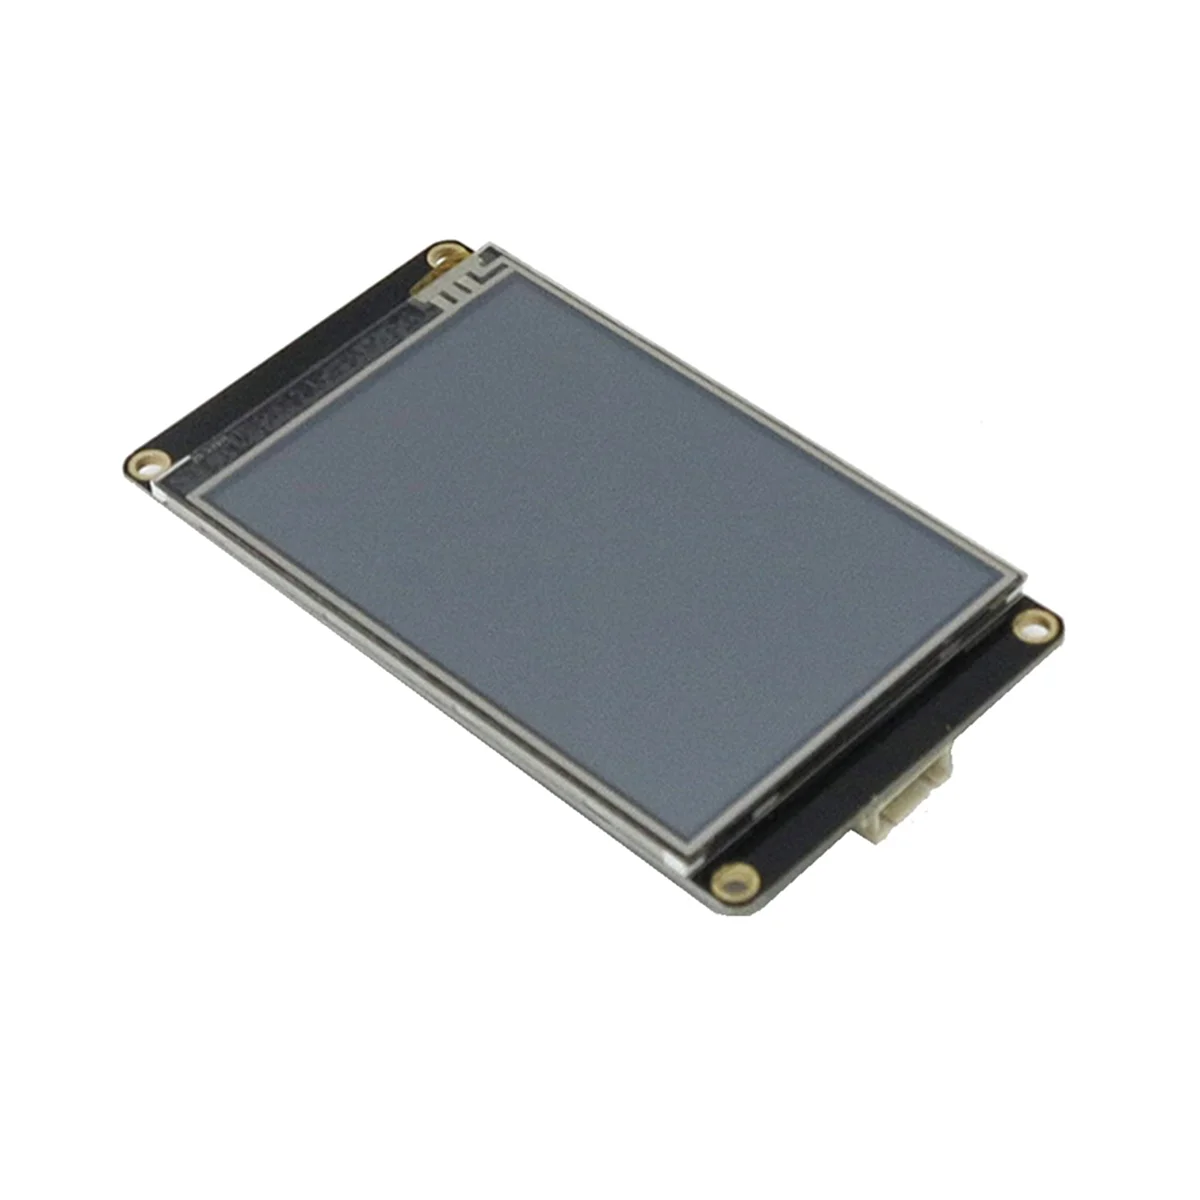 

NEXTION HMI ЖК сенсорный дисплей NX4832K035 3,5-дюймовый резистивный дисплей Улучшенная серия UASRT TFT LCD модуль